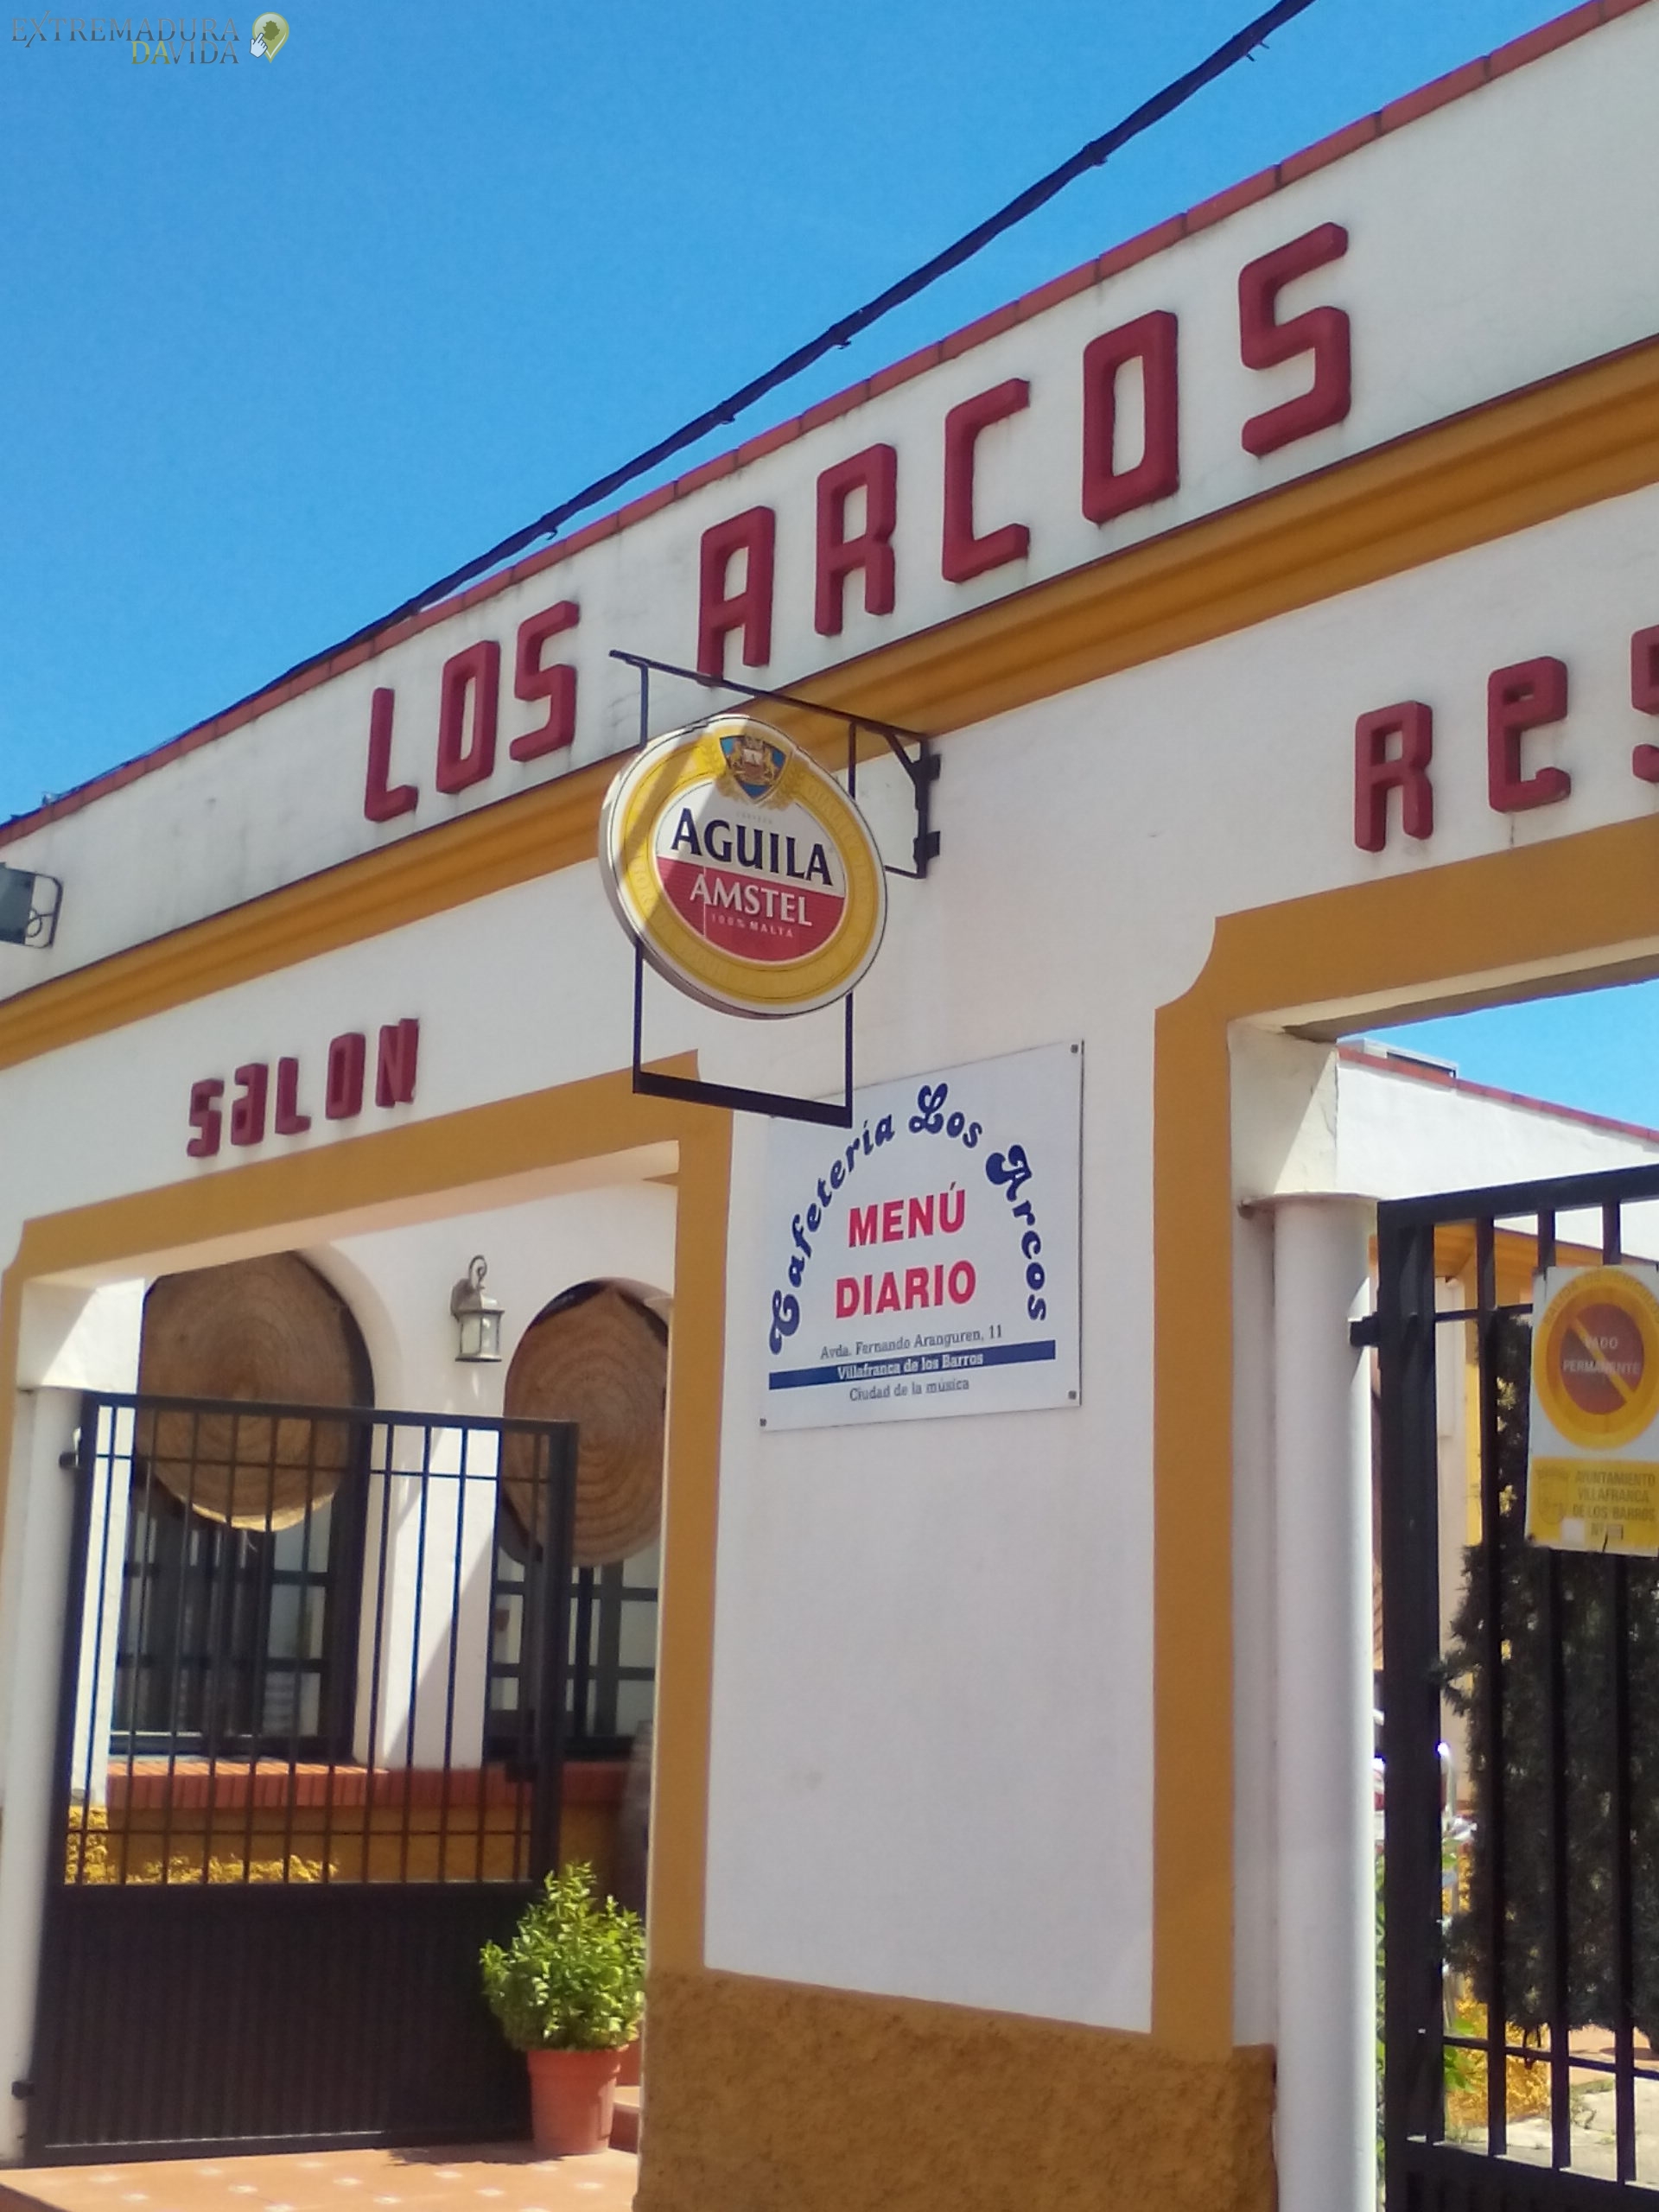 RESTAURANTE CAFETERIA EN VILLAFRANCA DE LOS BARROS LOS ARCOS